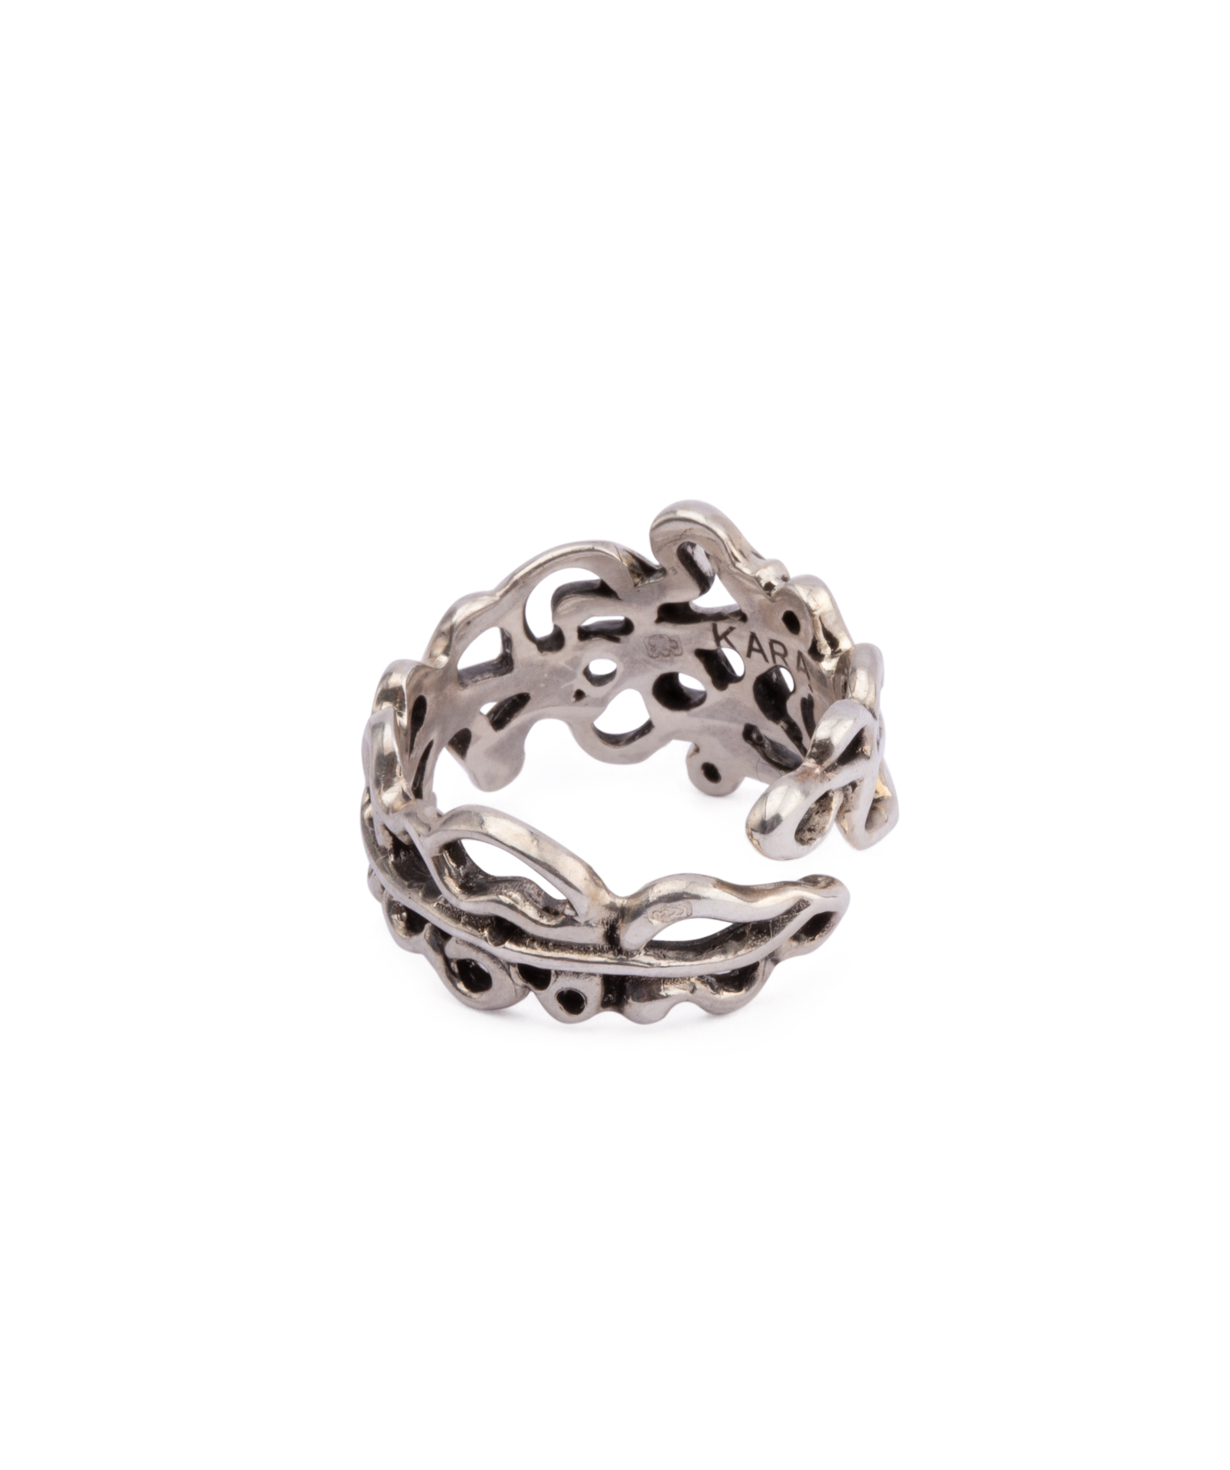 Ring `Kara Silver` branches